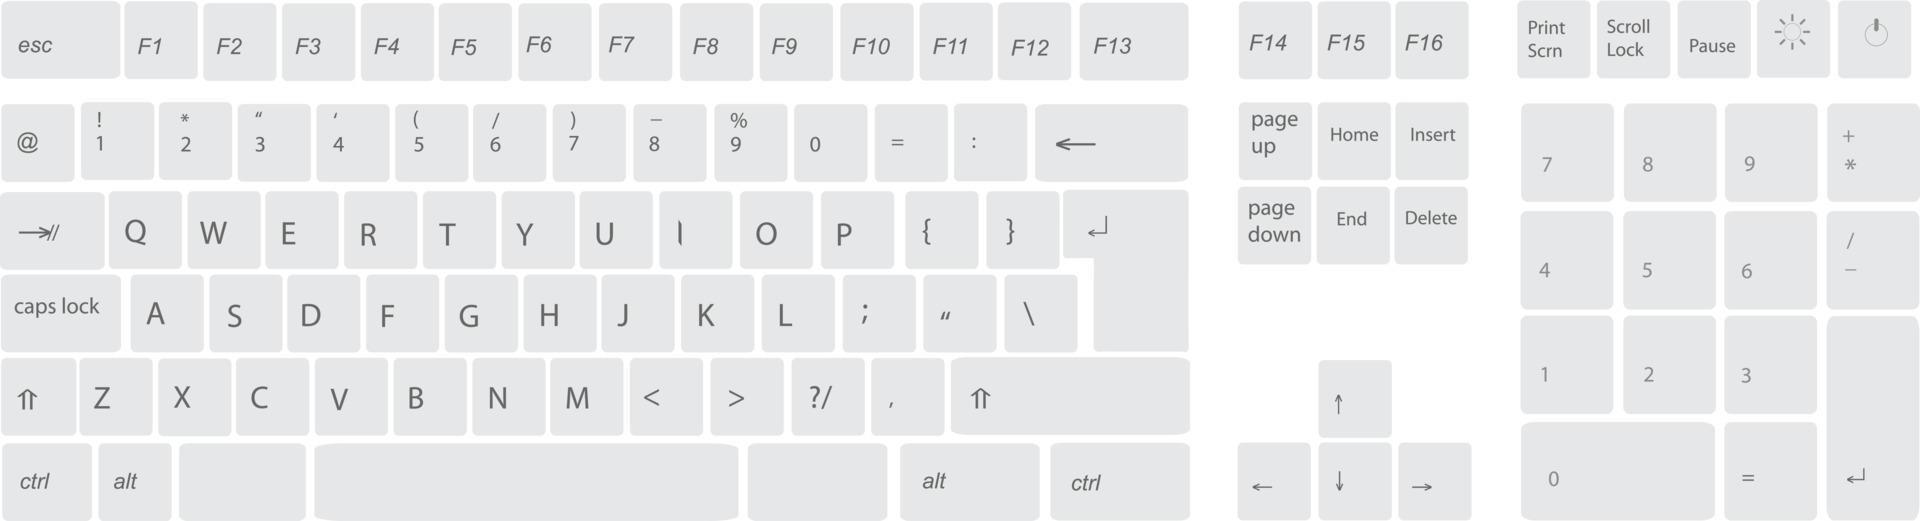 modelo de layout de botão de teclado de computador branco com letras para uso gráfico, ilustração vetorial eps 10 vetor